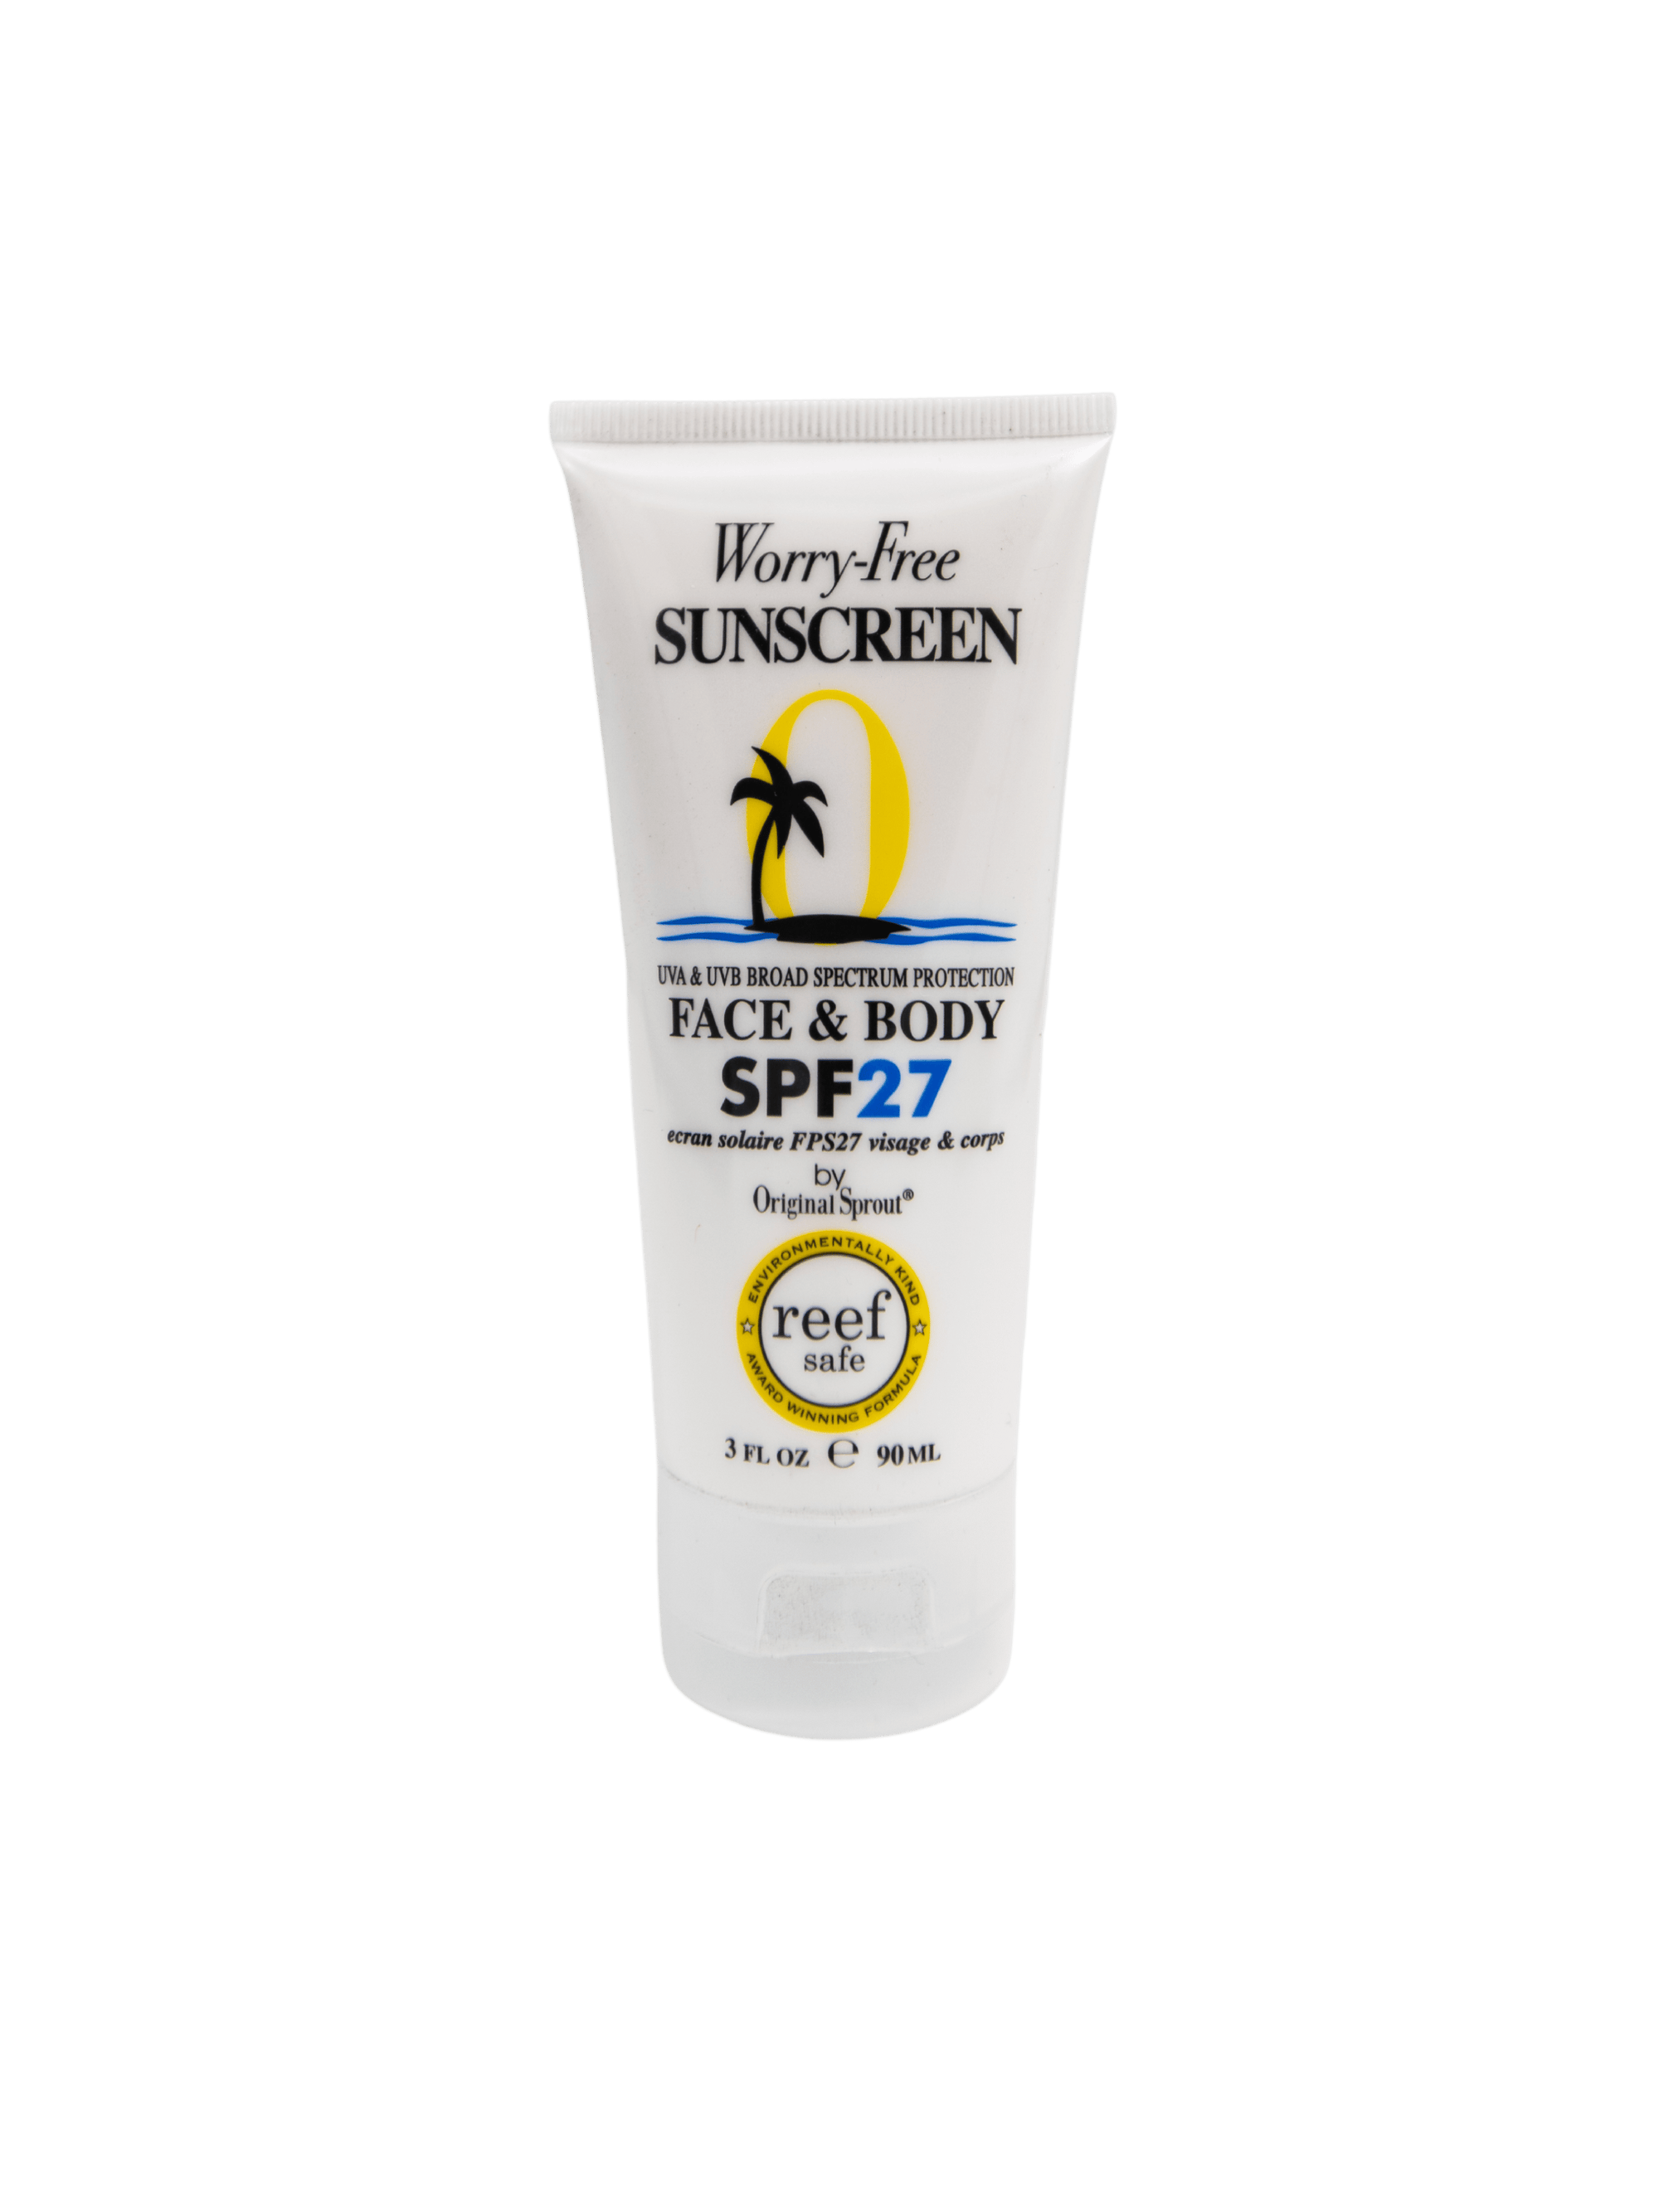 Original Sprout sunscreen Original Sprout Face & Body Sunscreen SPF 27 (3oz / 90ml)